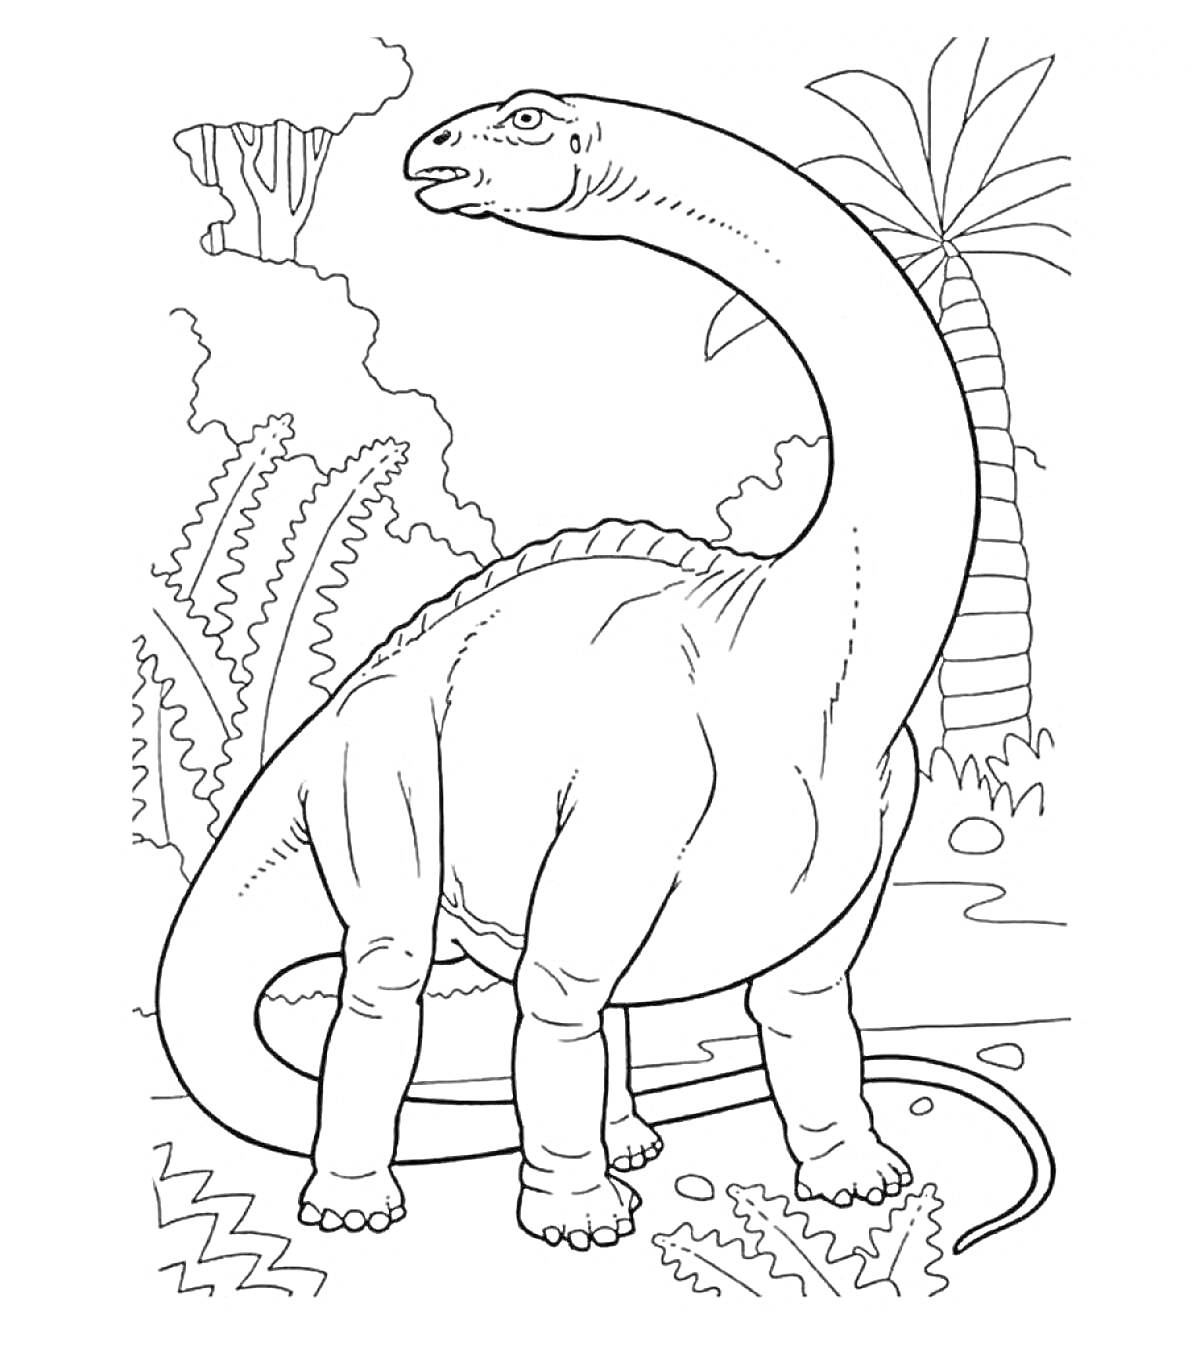 Раскраска Бронтозавр на фоне доисторического ландшафта с растительностью и водопадом